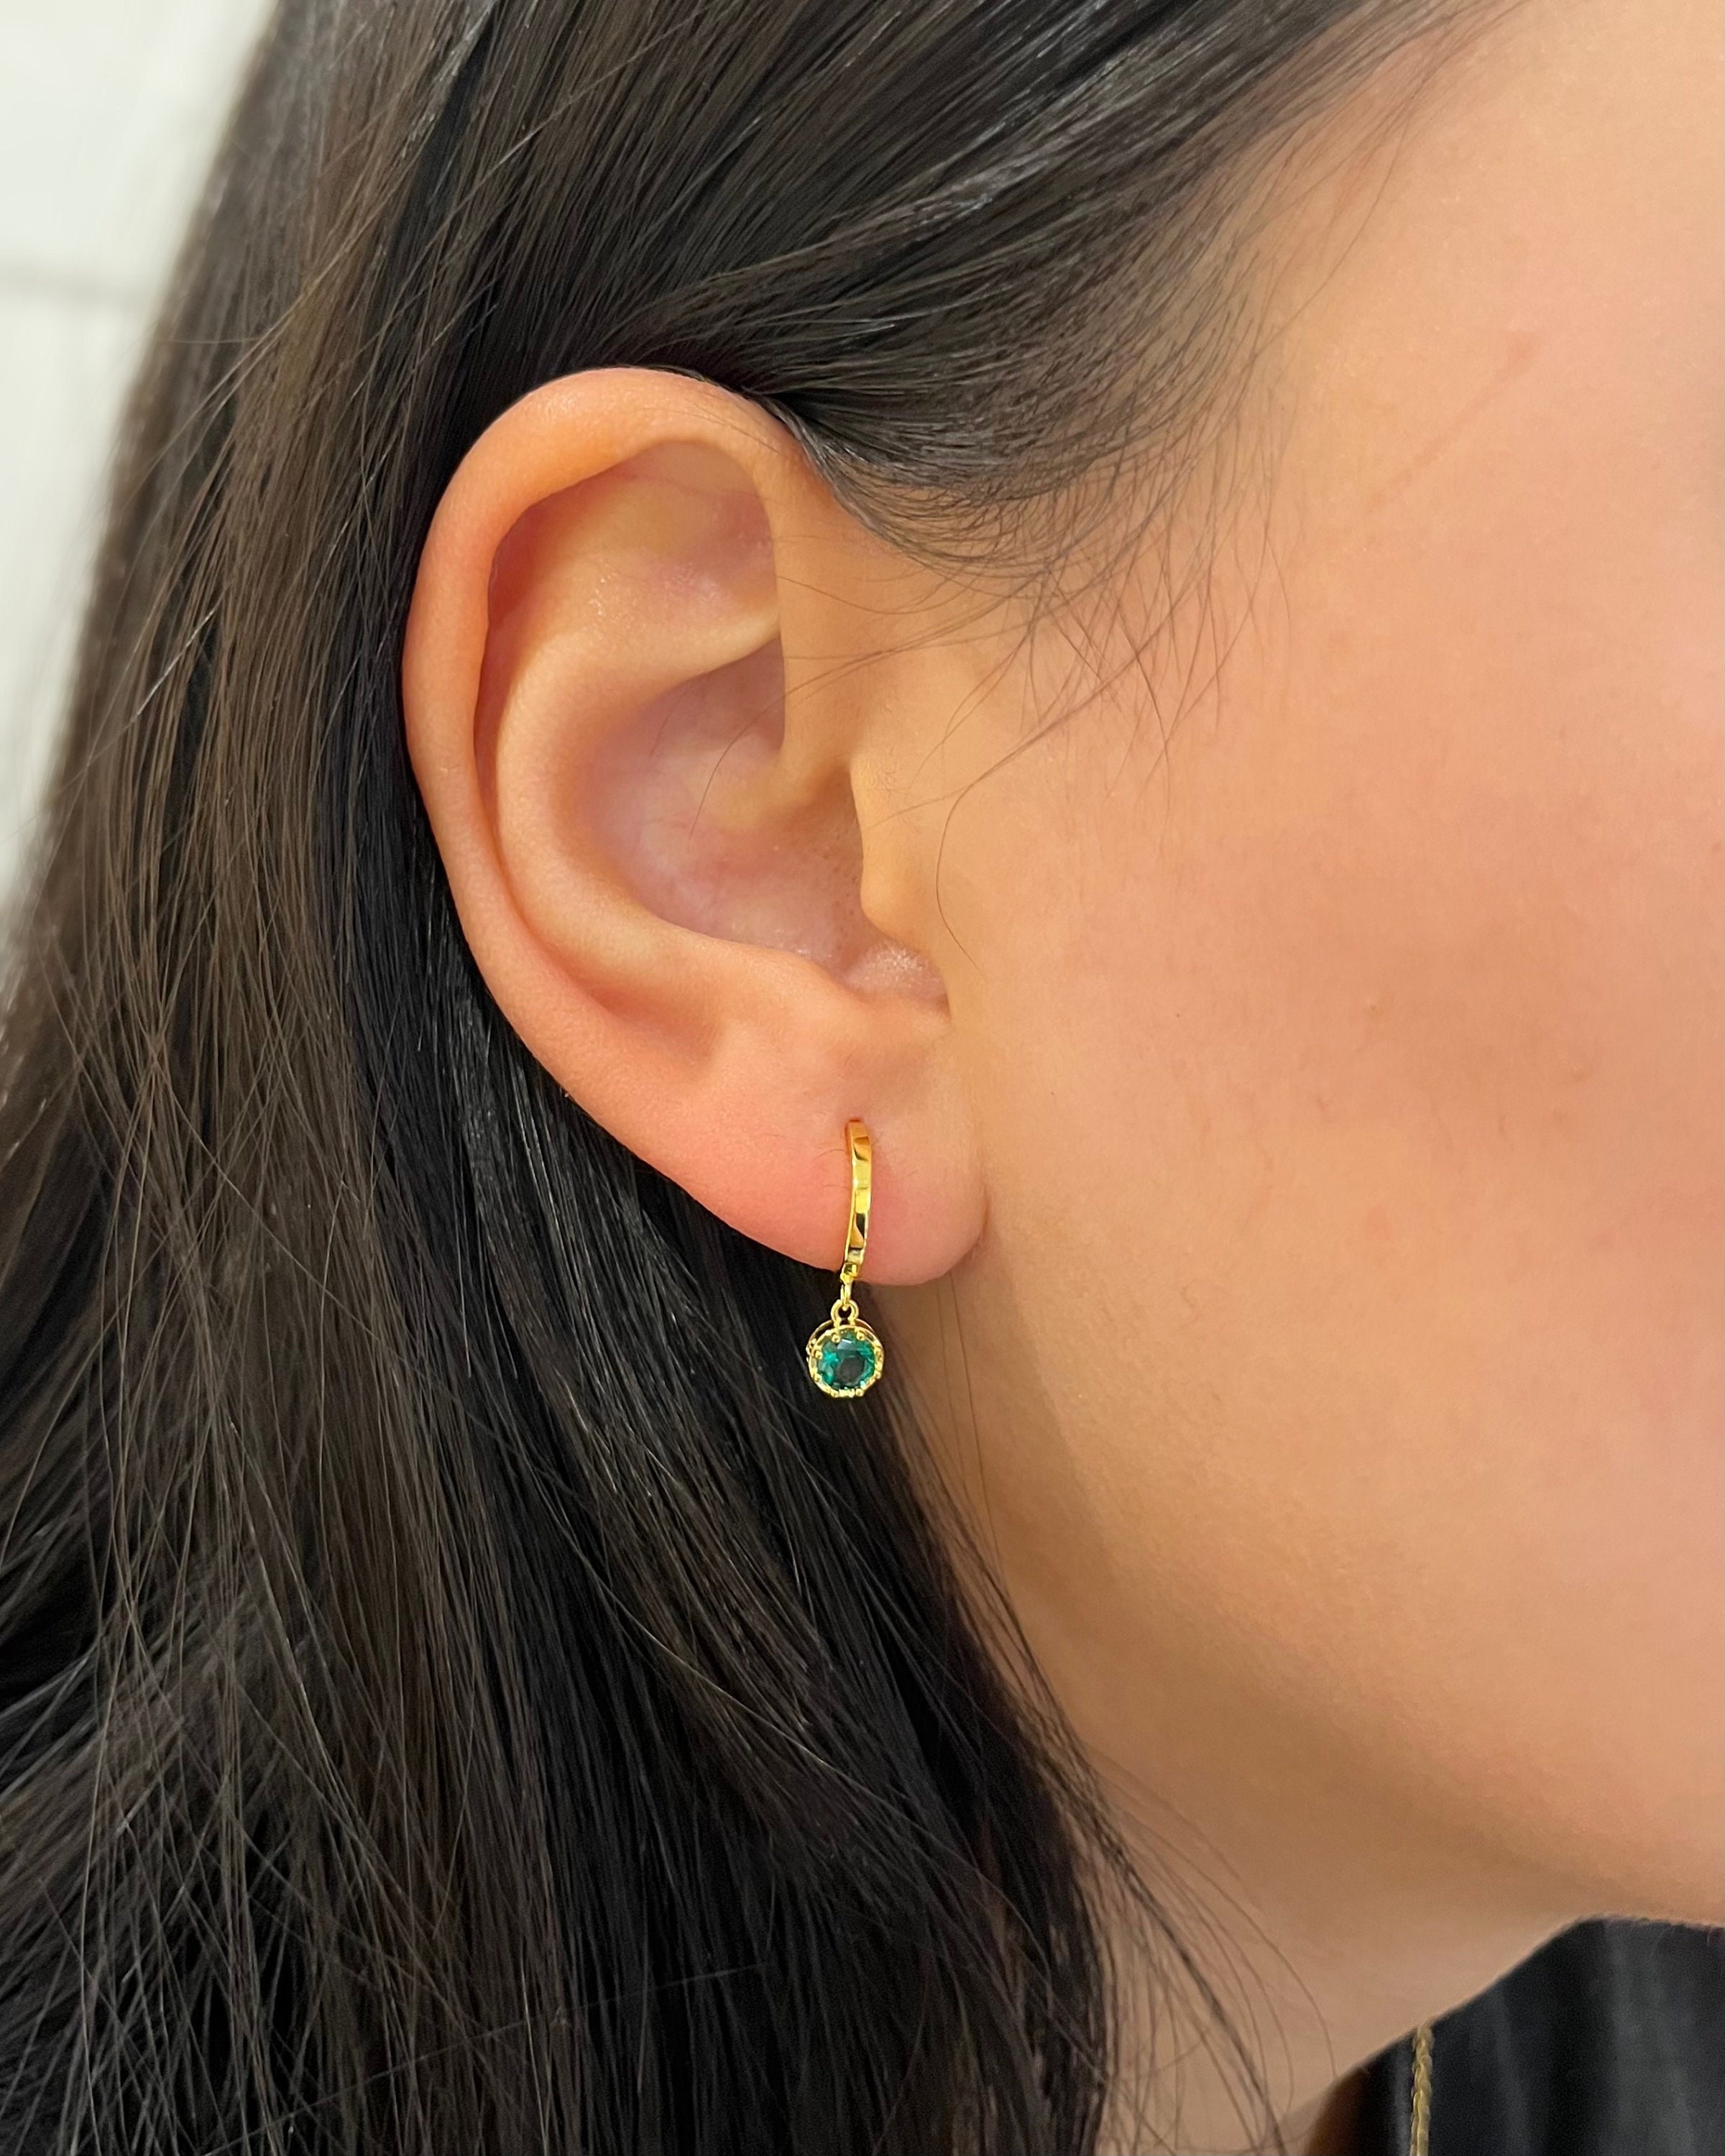 Green tourmaline earrings Ethnic Gold hoop earrings Gemstone earrings Solid gold hoops Jewellery Earrings Hoop Earrings Pendant hoops 14k gold hoops Boho earrings 